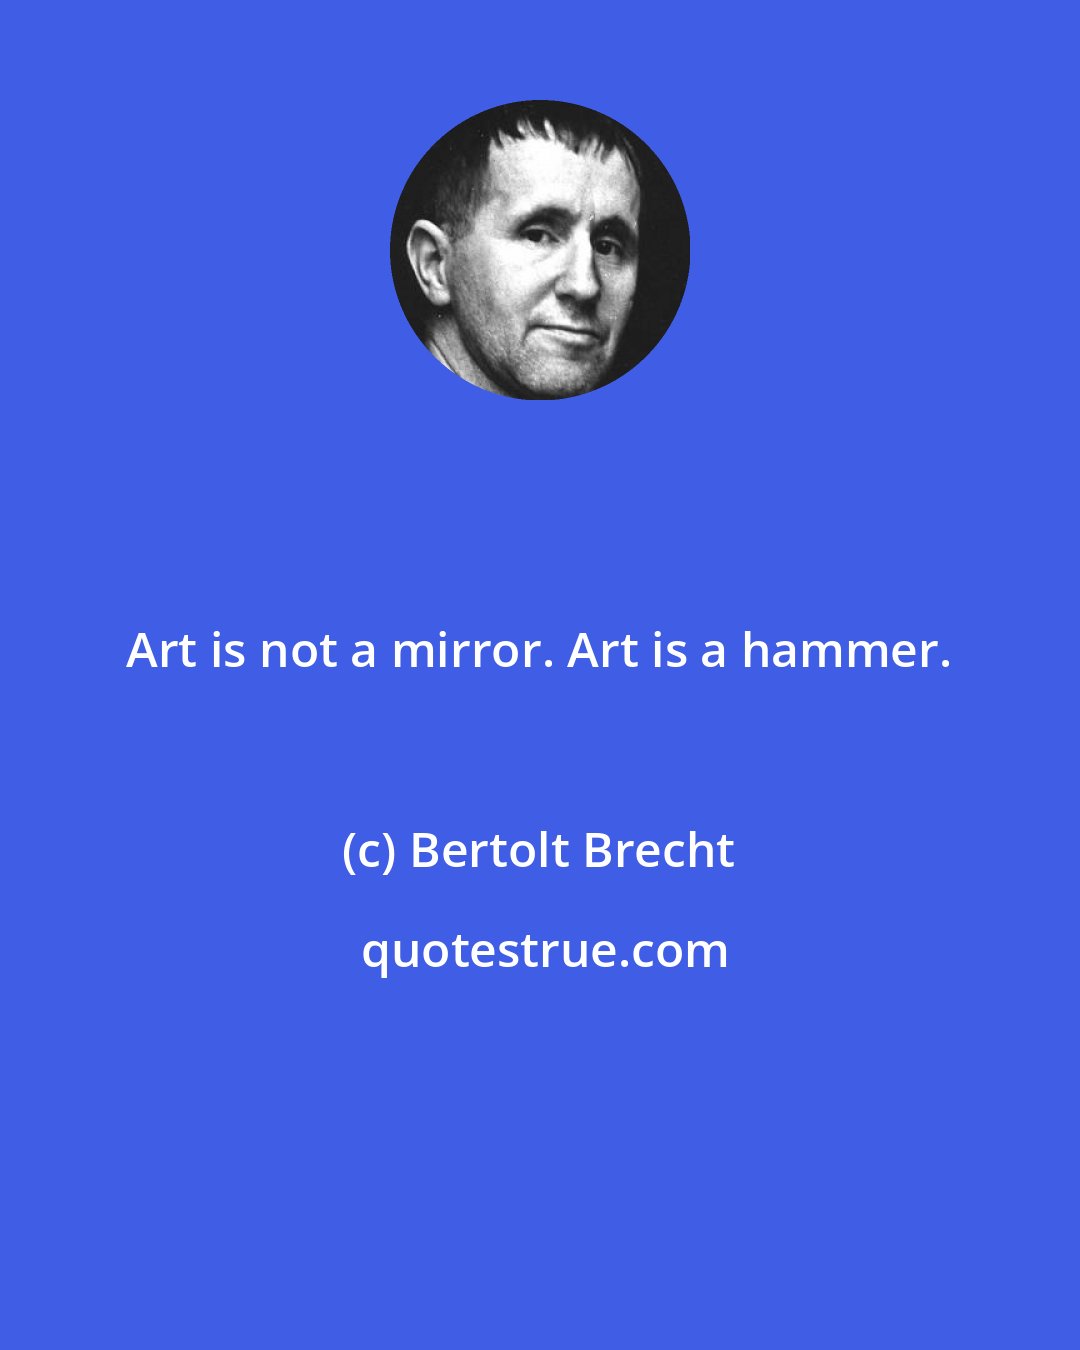 Bertolt Brecht: Art is not a mirror. Art is a hammer.